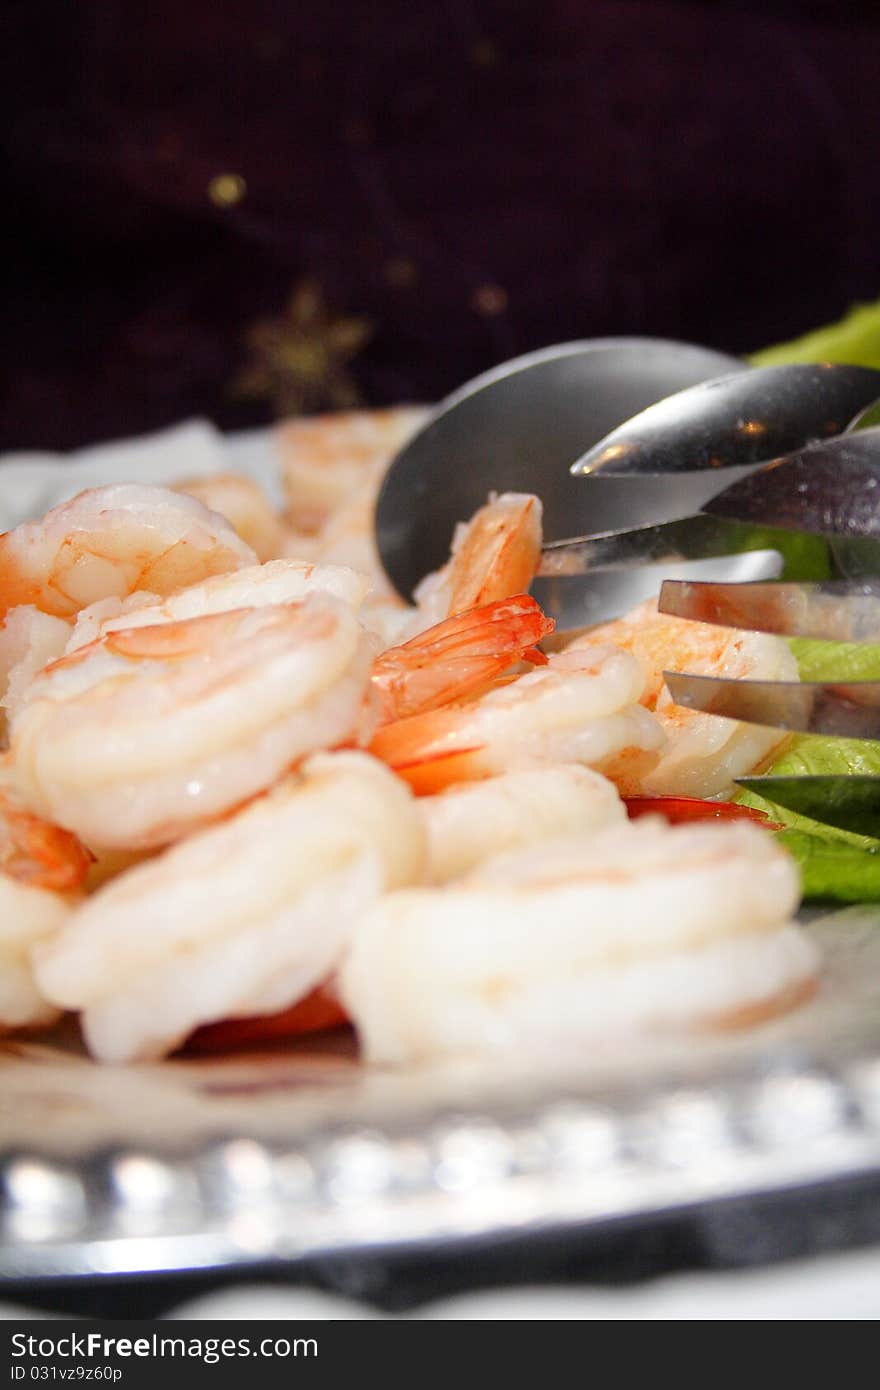 Shrimp on a plate, finger food. Shrimp on a plate, finger food